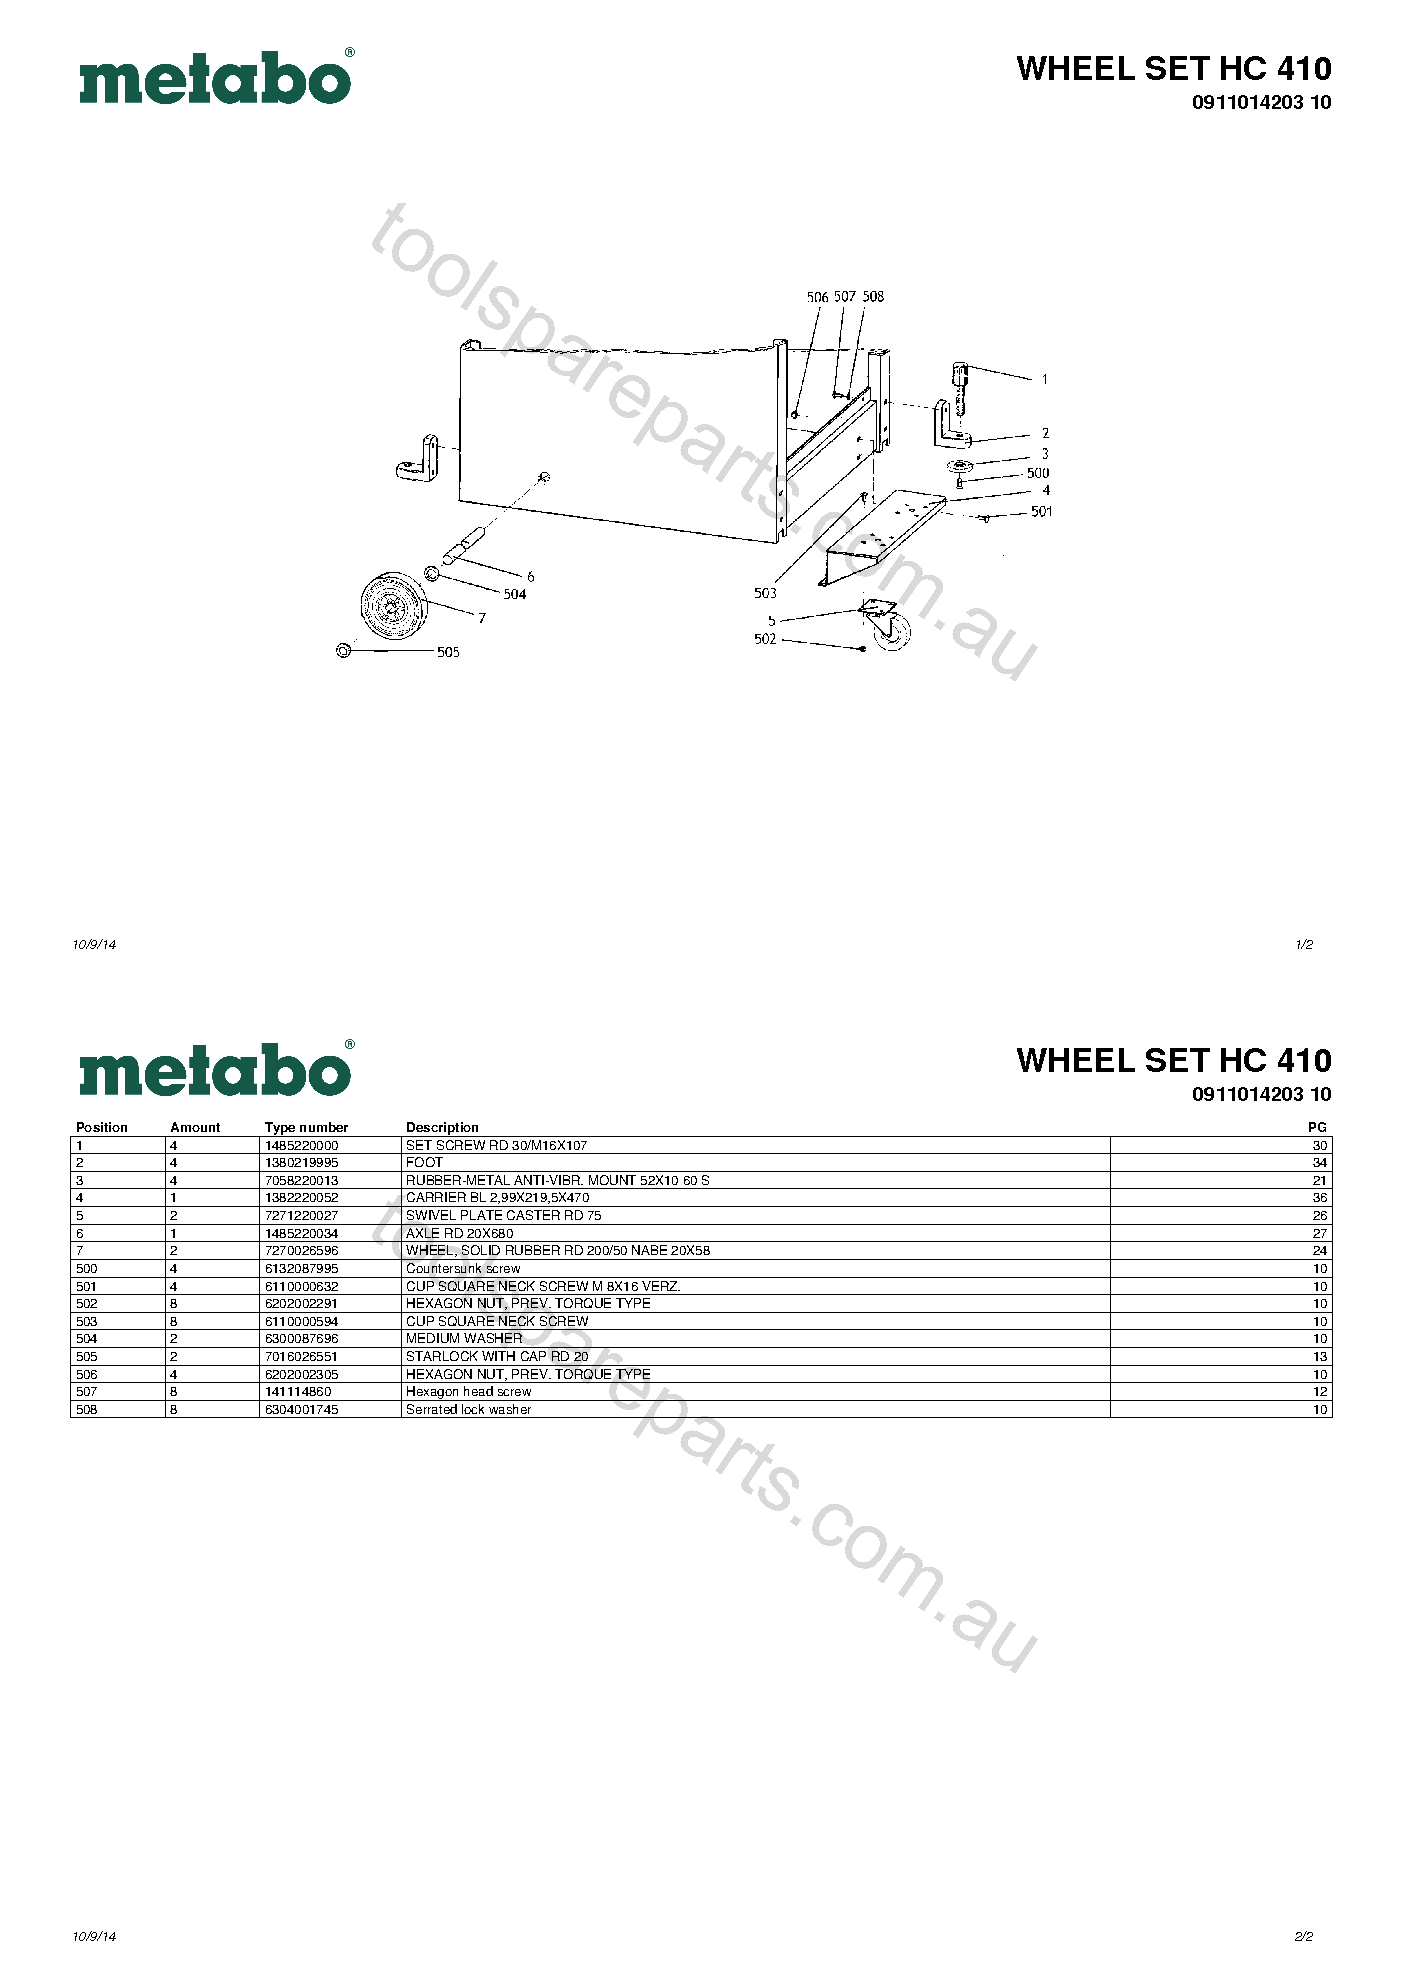 Metabo WHEEL SET HC 410 0911014203 10  Diagram 1